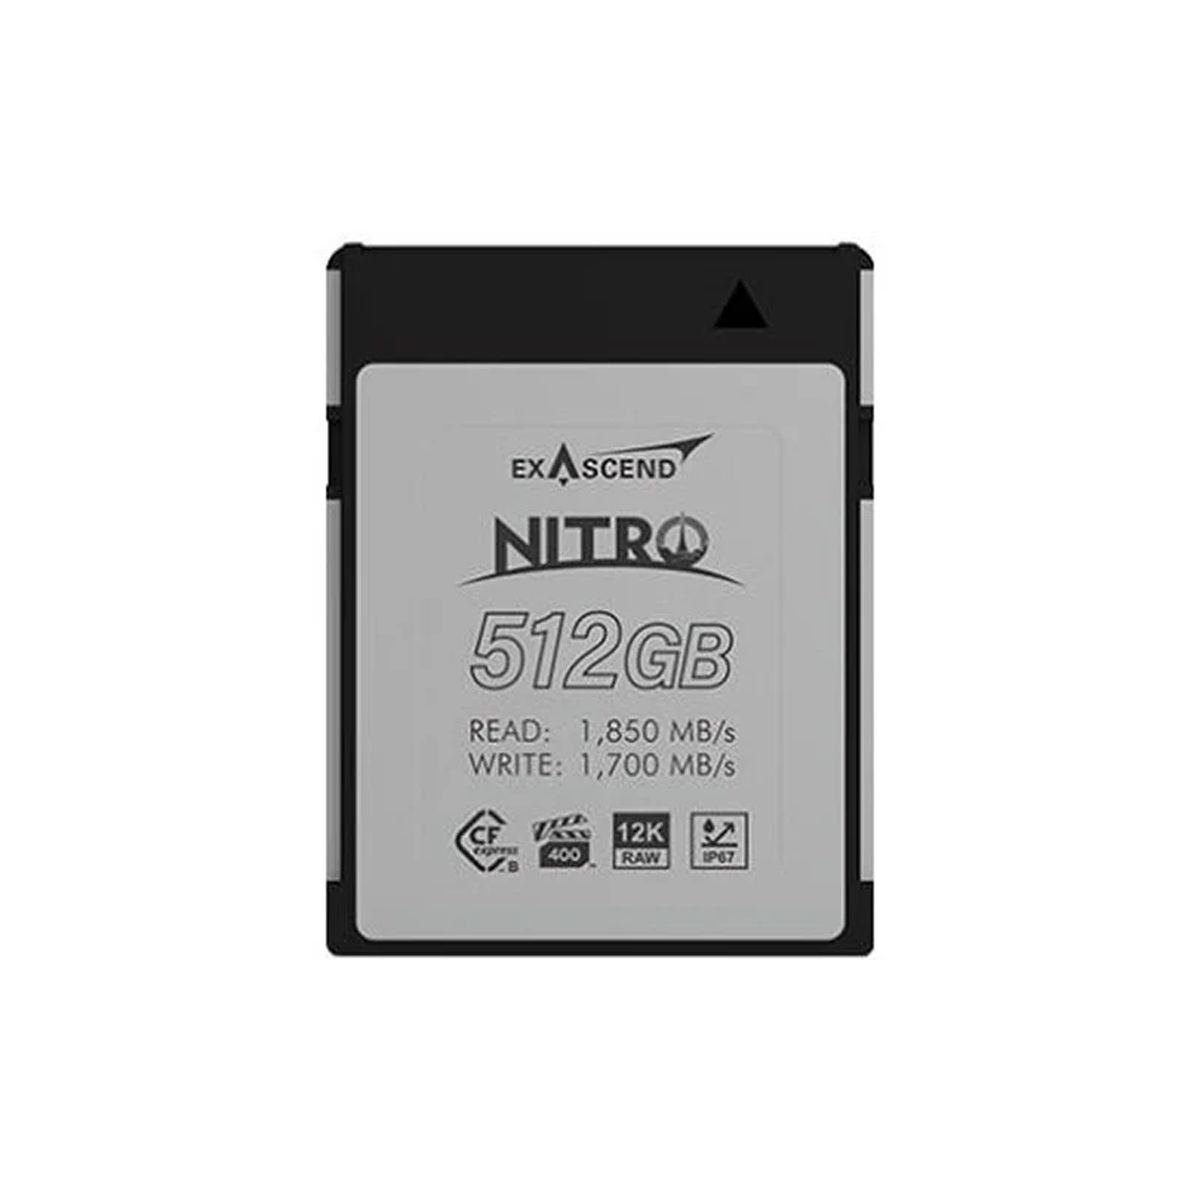  Thẻ nhớ CF Express (Type B) - Nitro - 512GB 1850MB/s hiệu Exascend - Chính hãng 